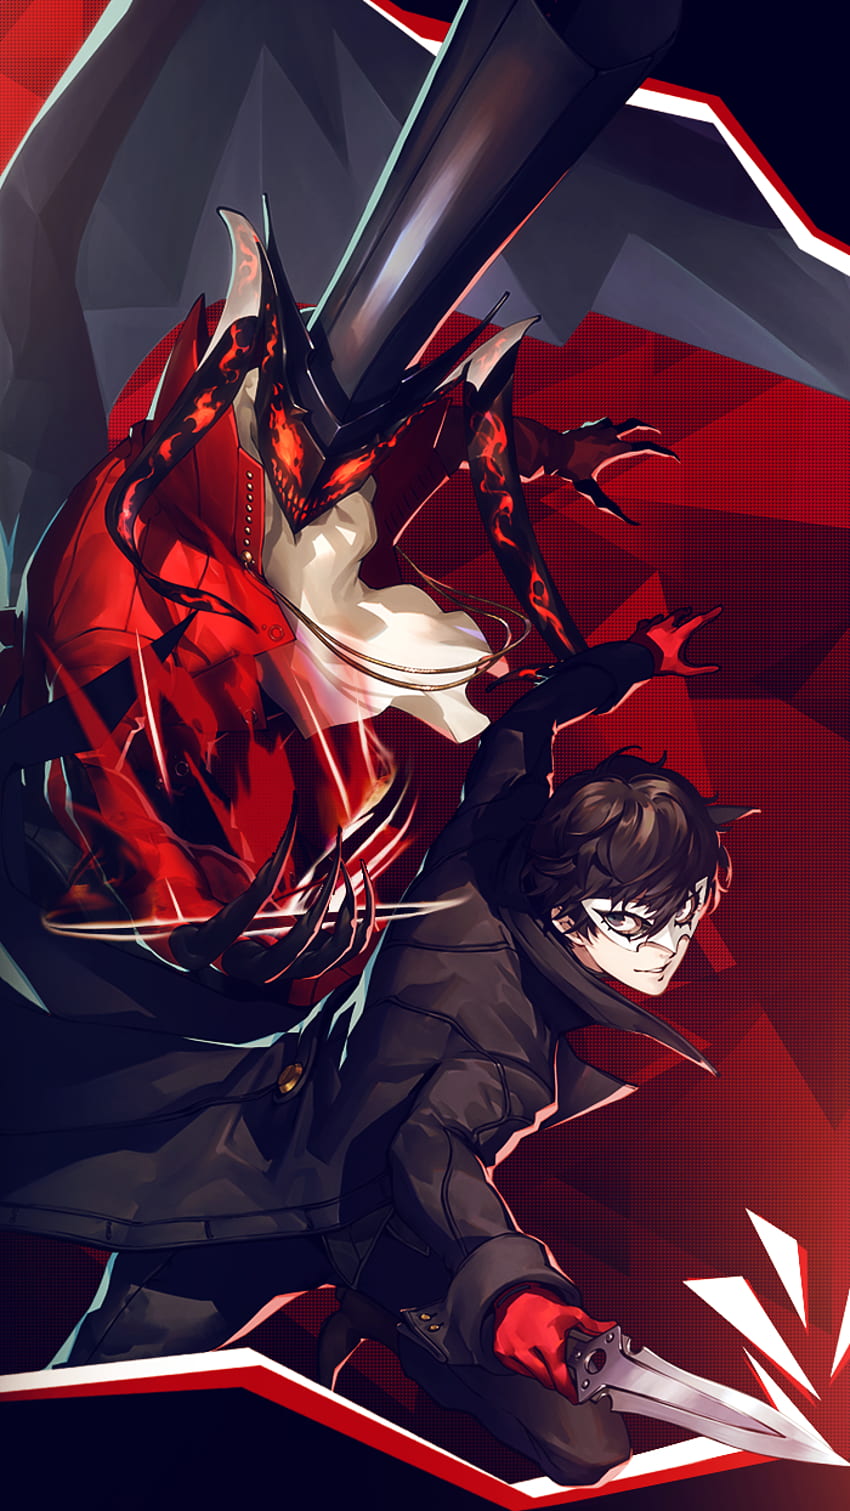 Joker & Arsene - Hintergrund für Handys, Persona 5 Arsene HD-Handy-Hintergrundbild